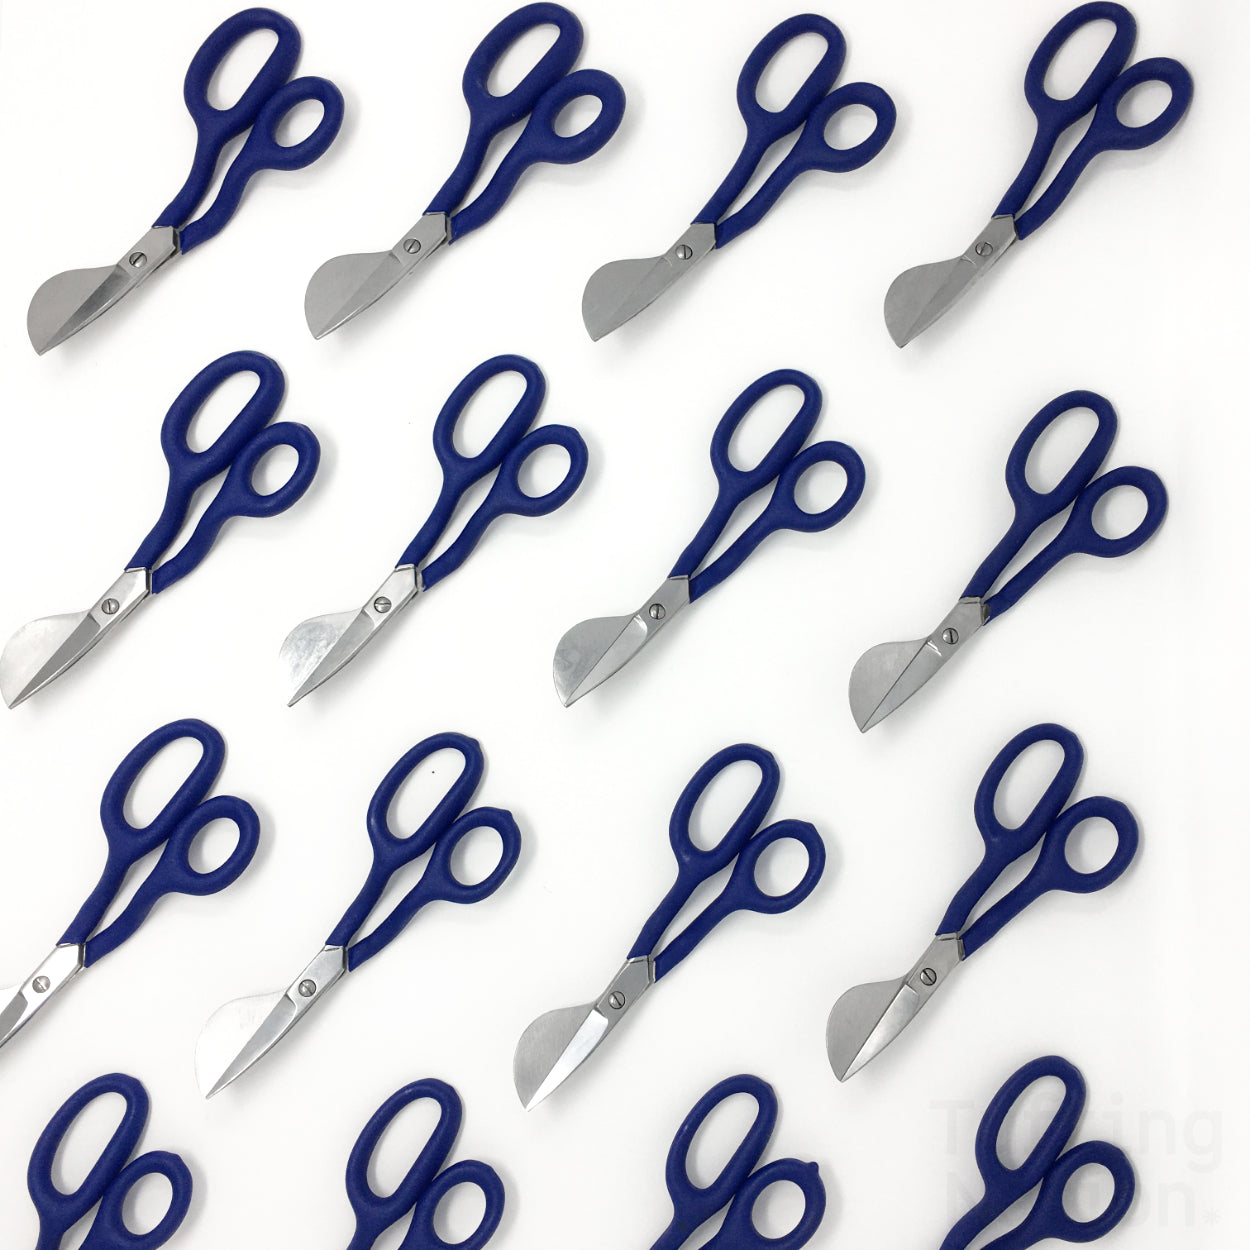 Duckbill scissors – Tufting